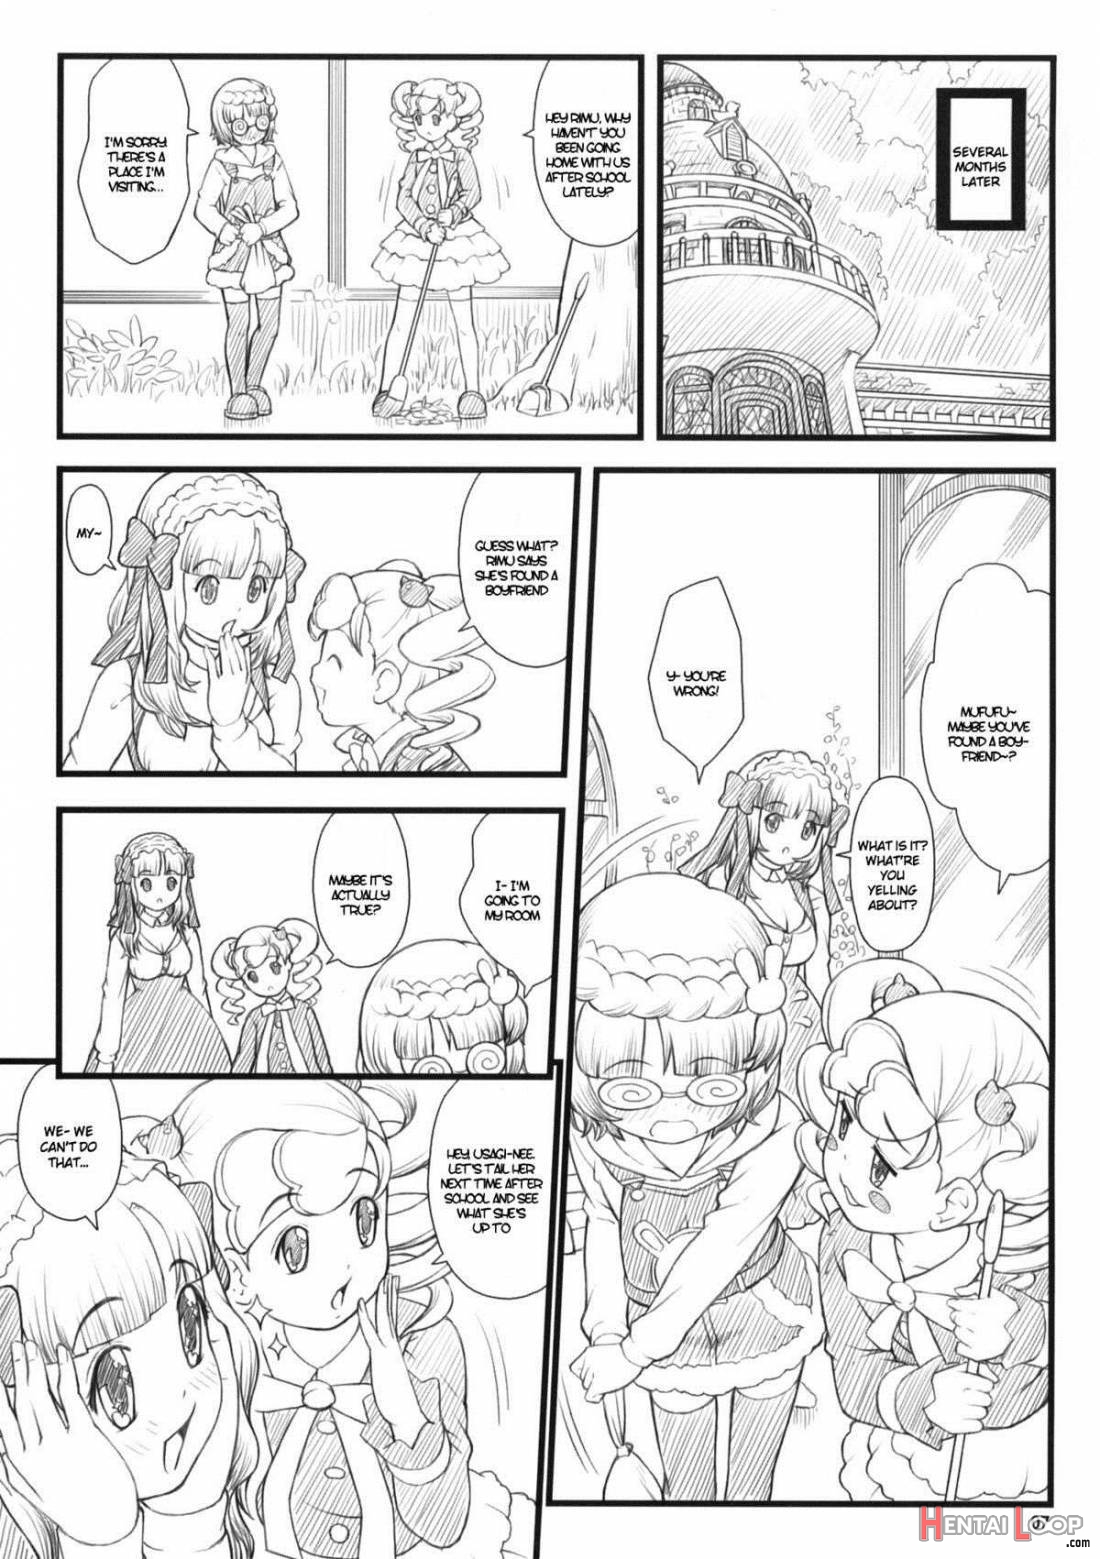 09 winter Ki page 5